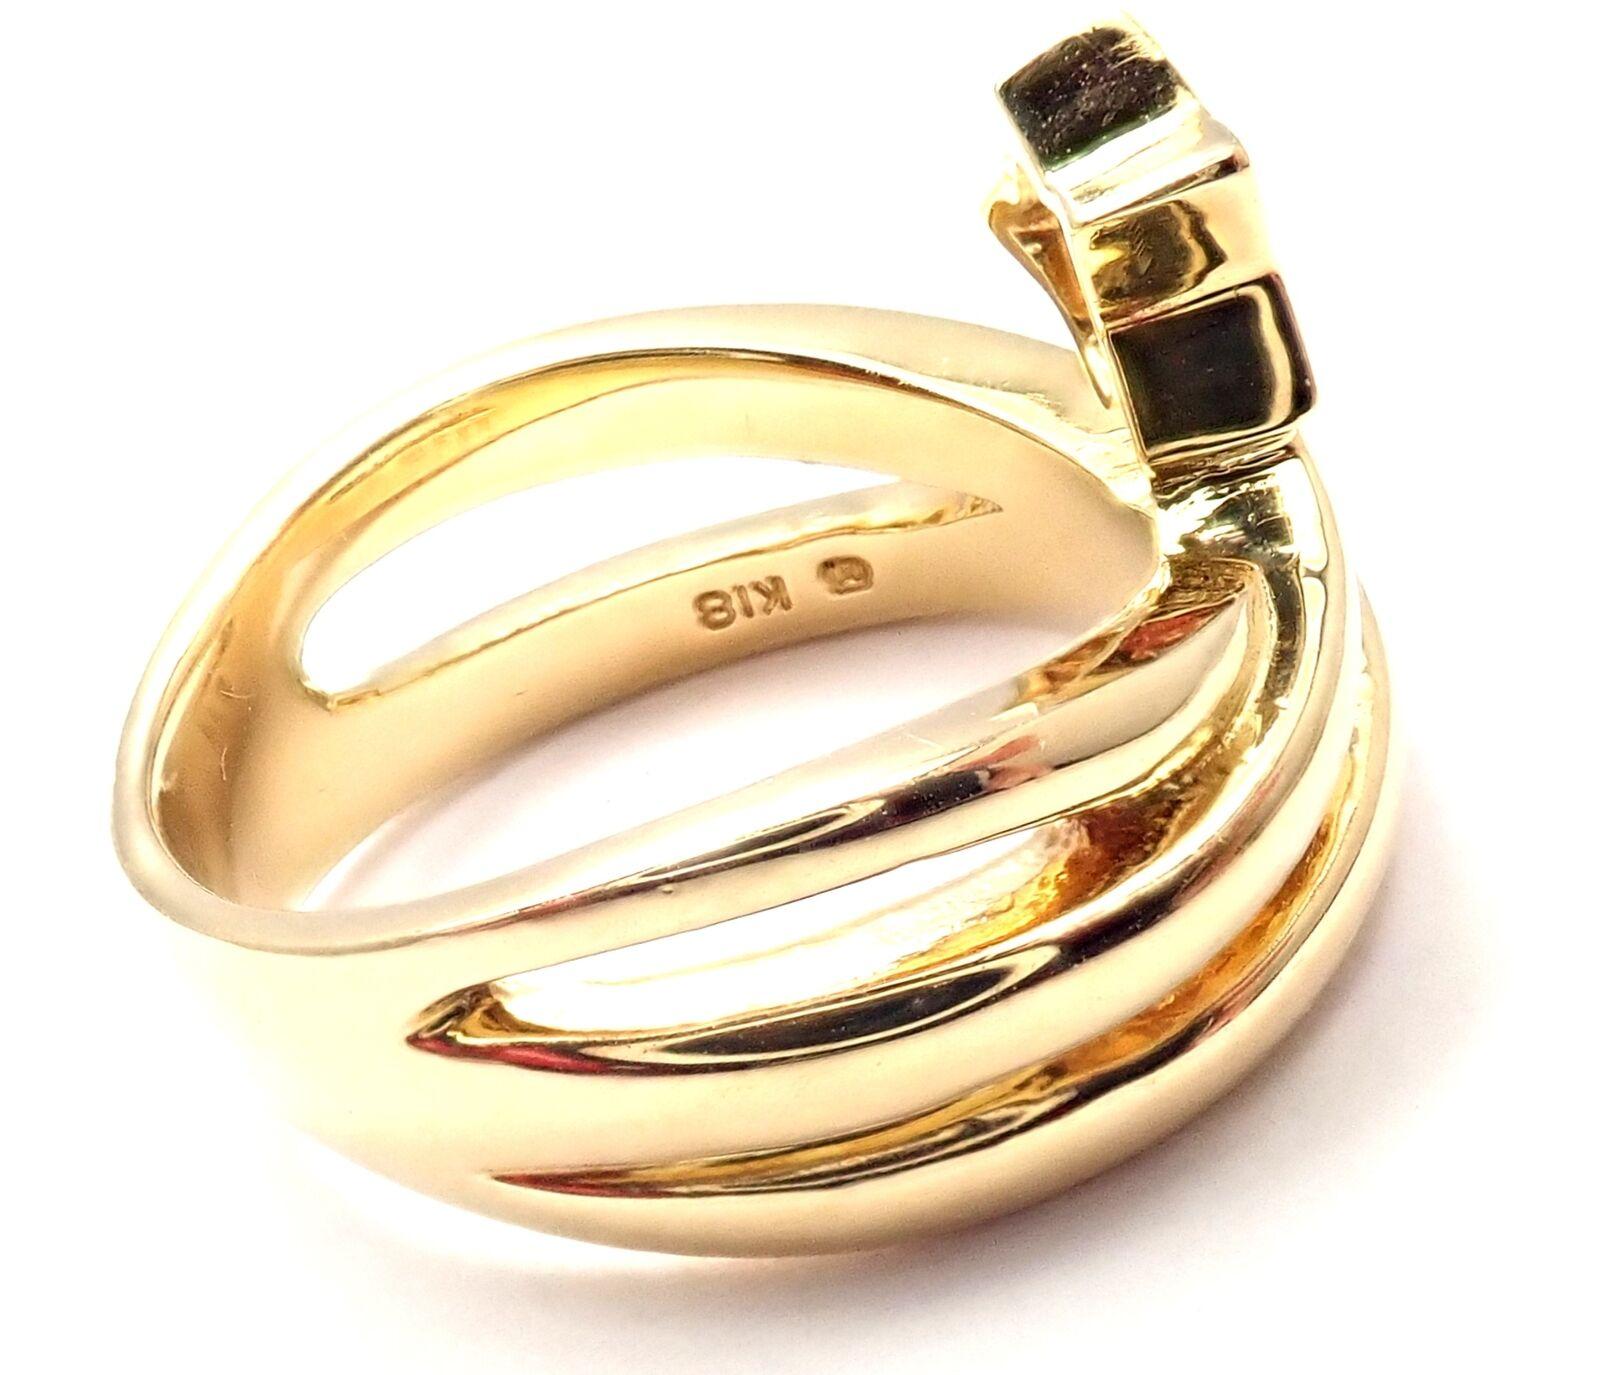 18k Gelbgold Diamant Lucky Star Band Ring von Mikimoto. 
Mit 1 runden Diamanten im Brillantschliff, Reinheit VS1, Farbe E, Gesamtgewicht ca. 0,05ct
Einzelheiten: 
Ringgröße: 5
Gewicht: 8,5 Gramm
Breite: 12 mm
Gestempelte Punzen: Mikimoto Punze 750